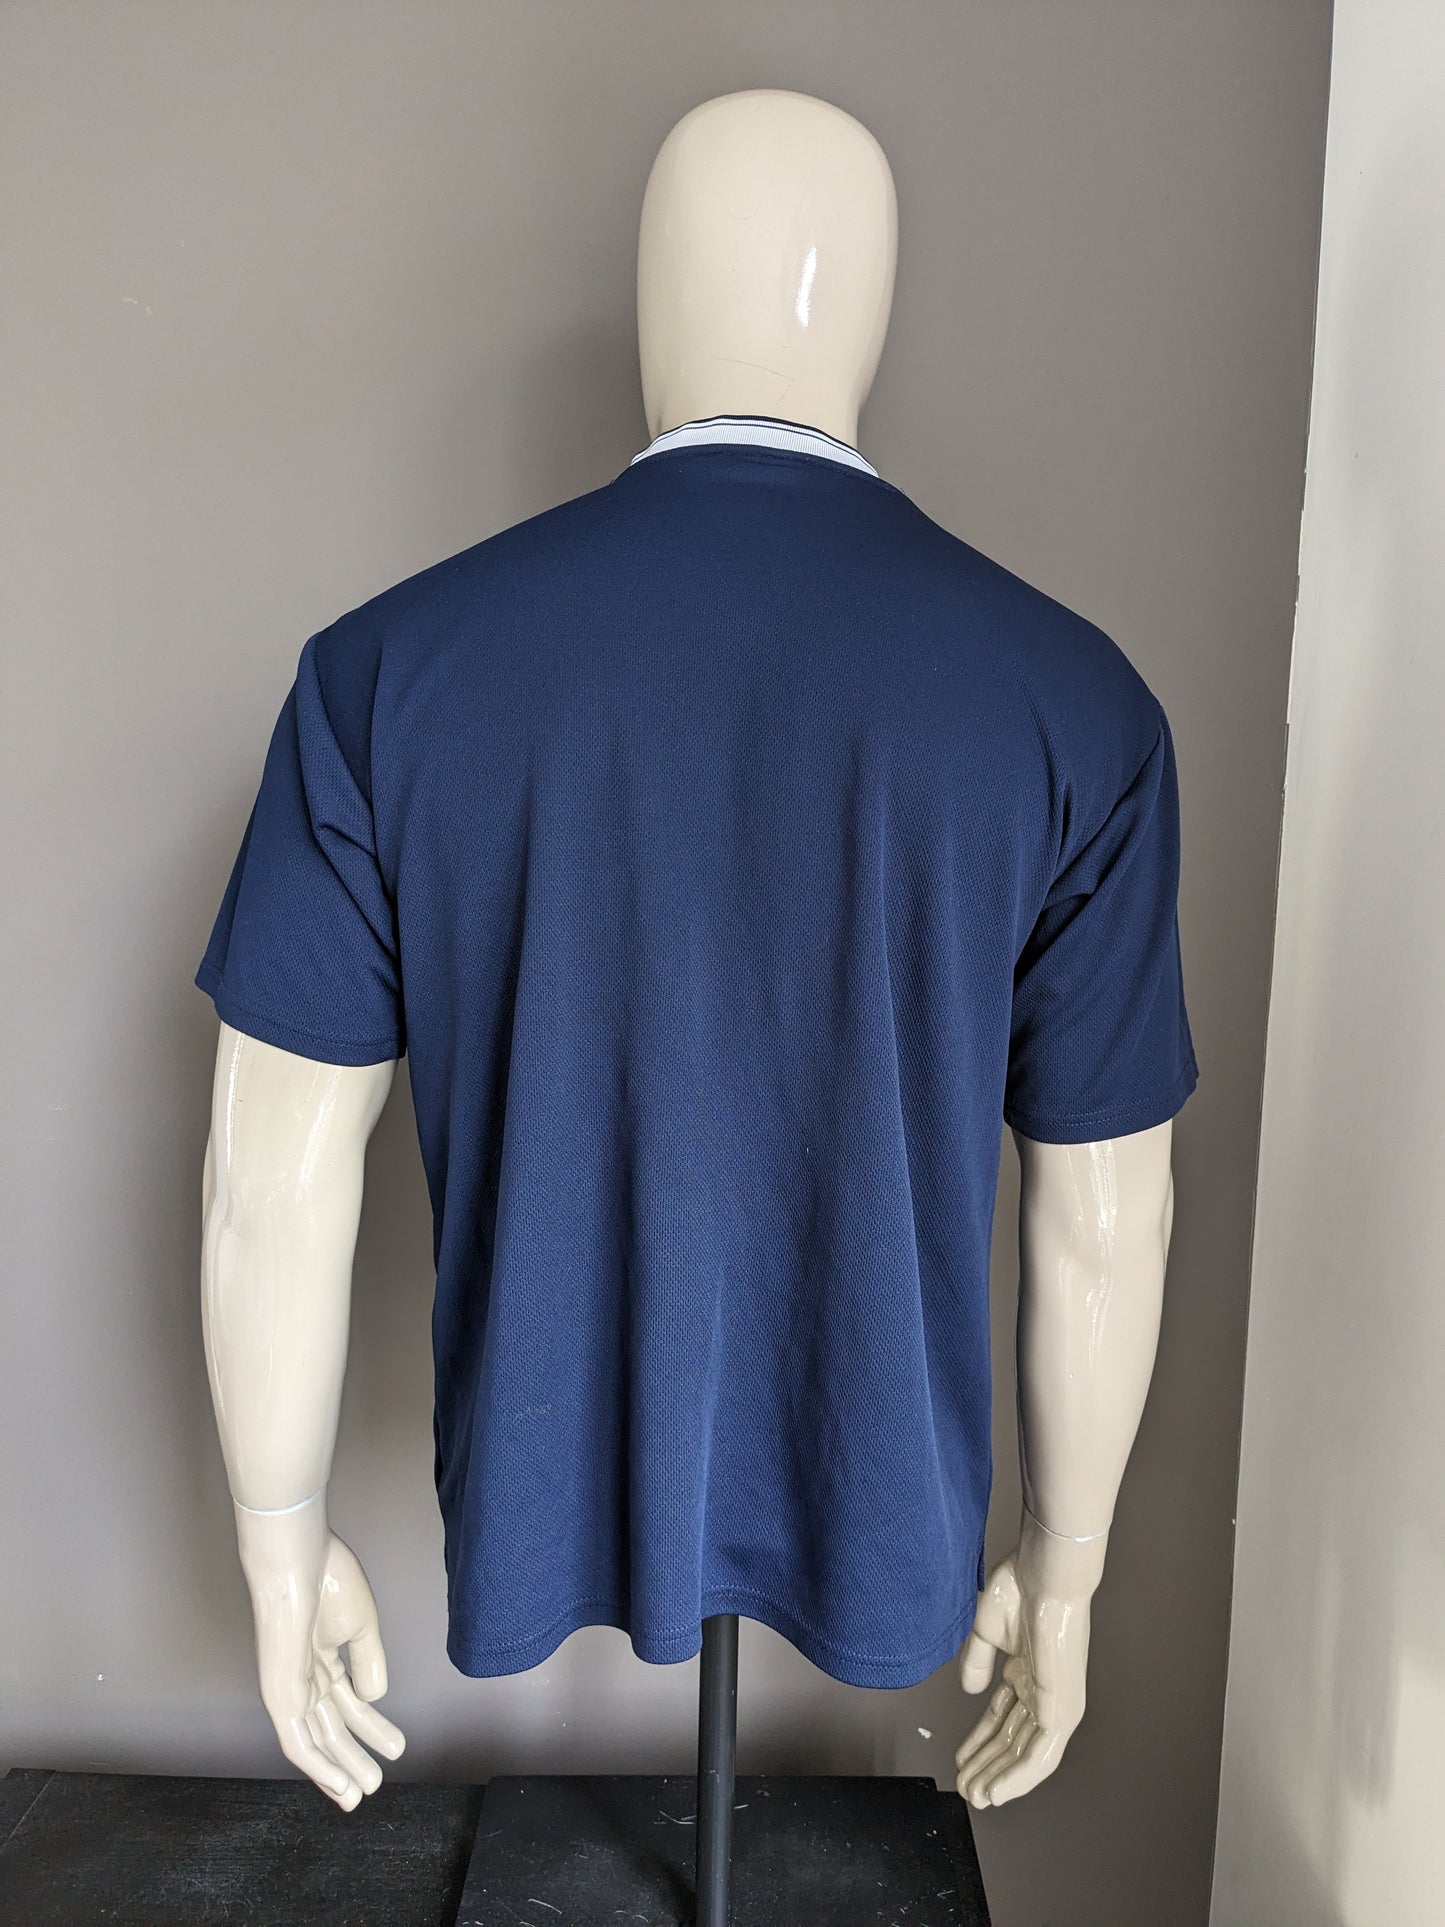 Vintage Fila-Shirt mit V-Ausschnitt. Dunkelblau gefärbt. Größe L.